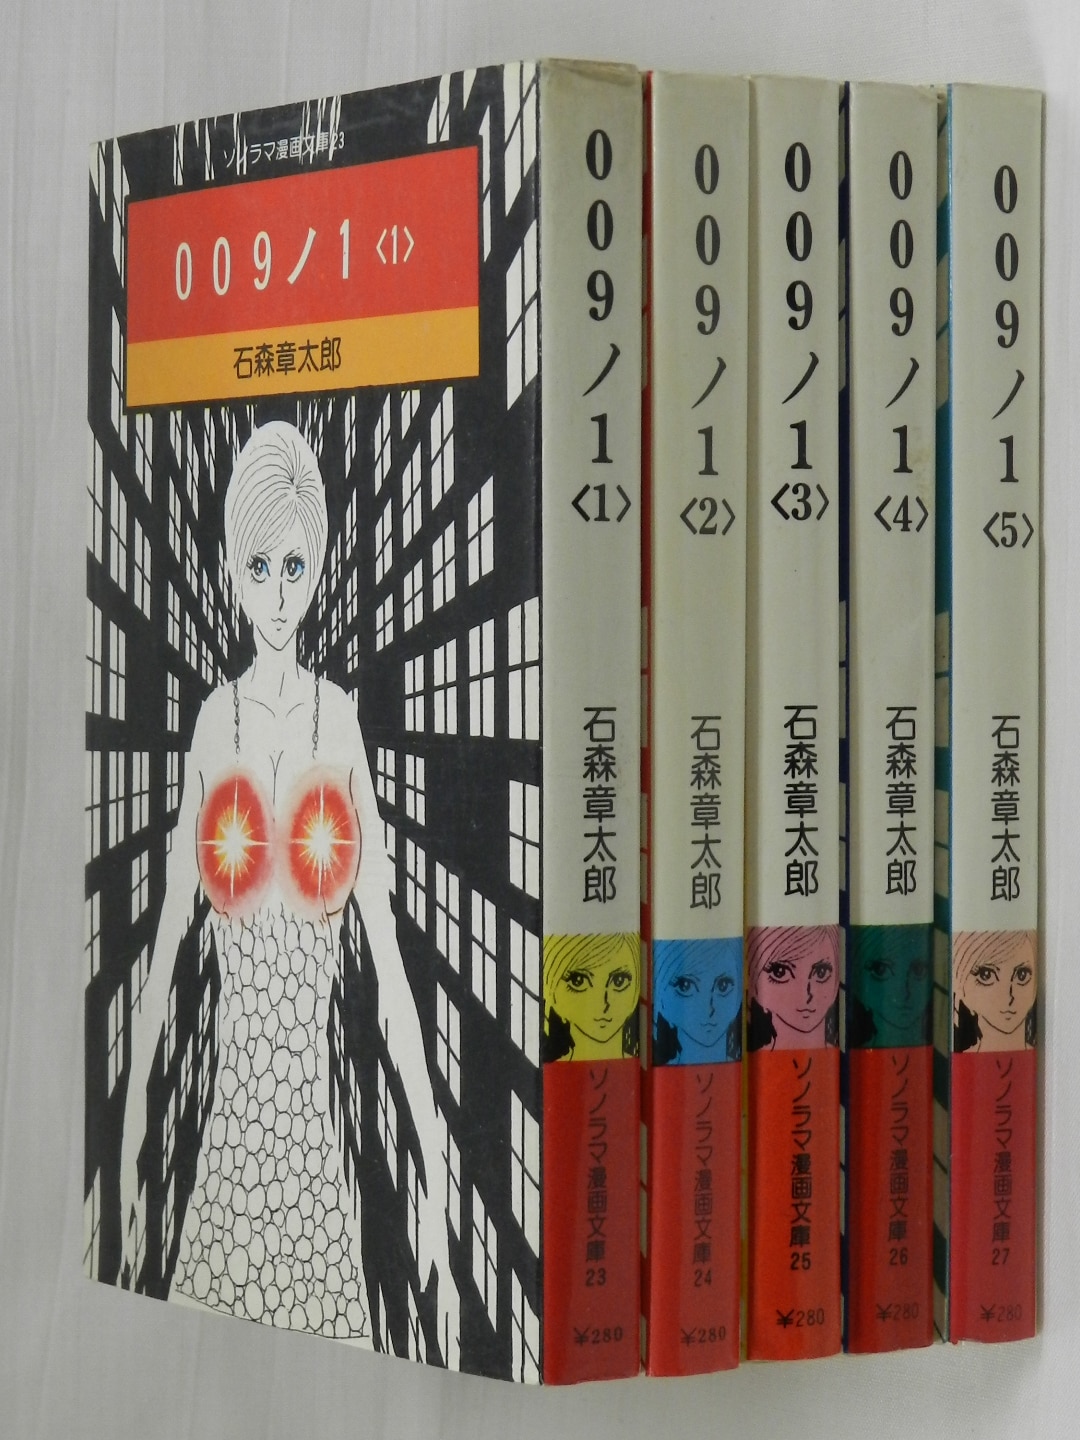 009ノ1 少年向け：コミックセット - コミック、アニメ